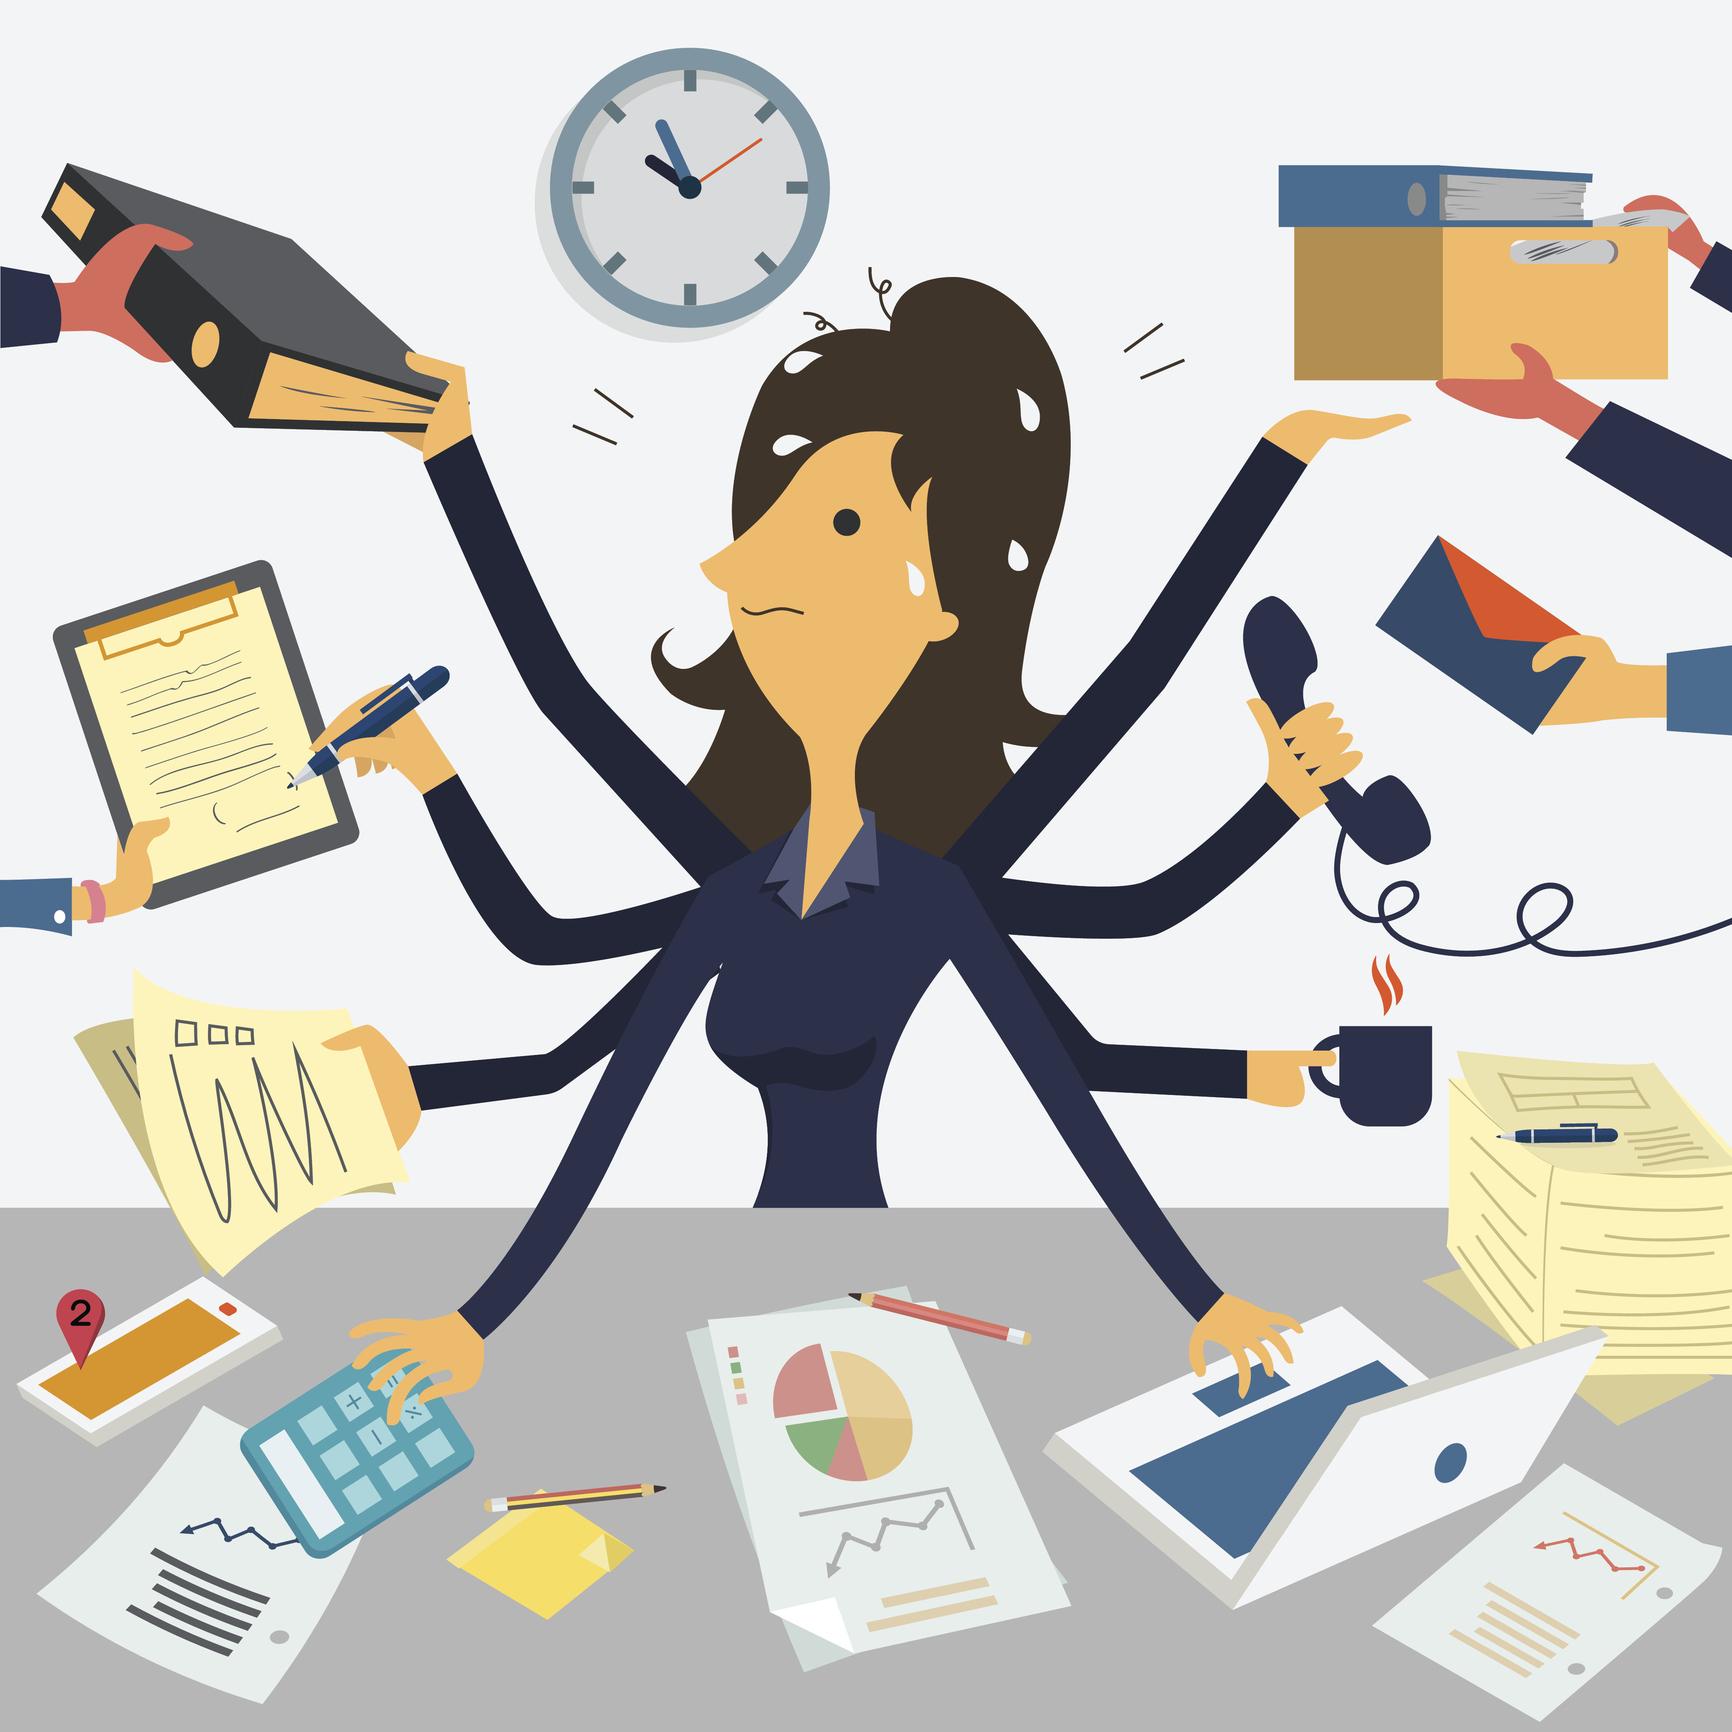 Stress lavoro correlato: come convivere con le pressioni lavorative